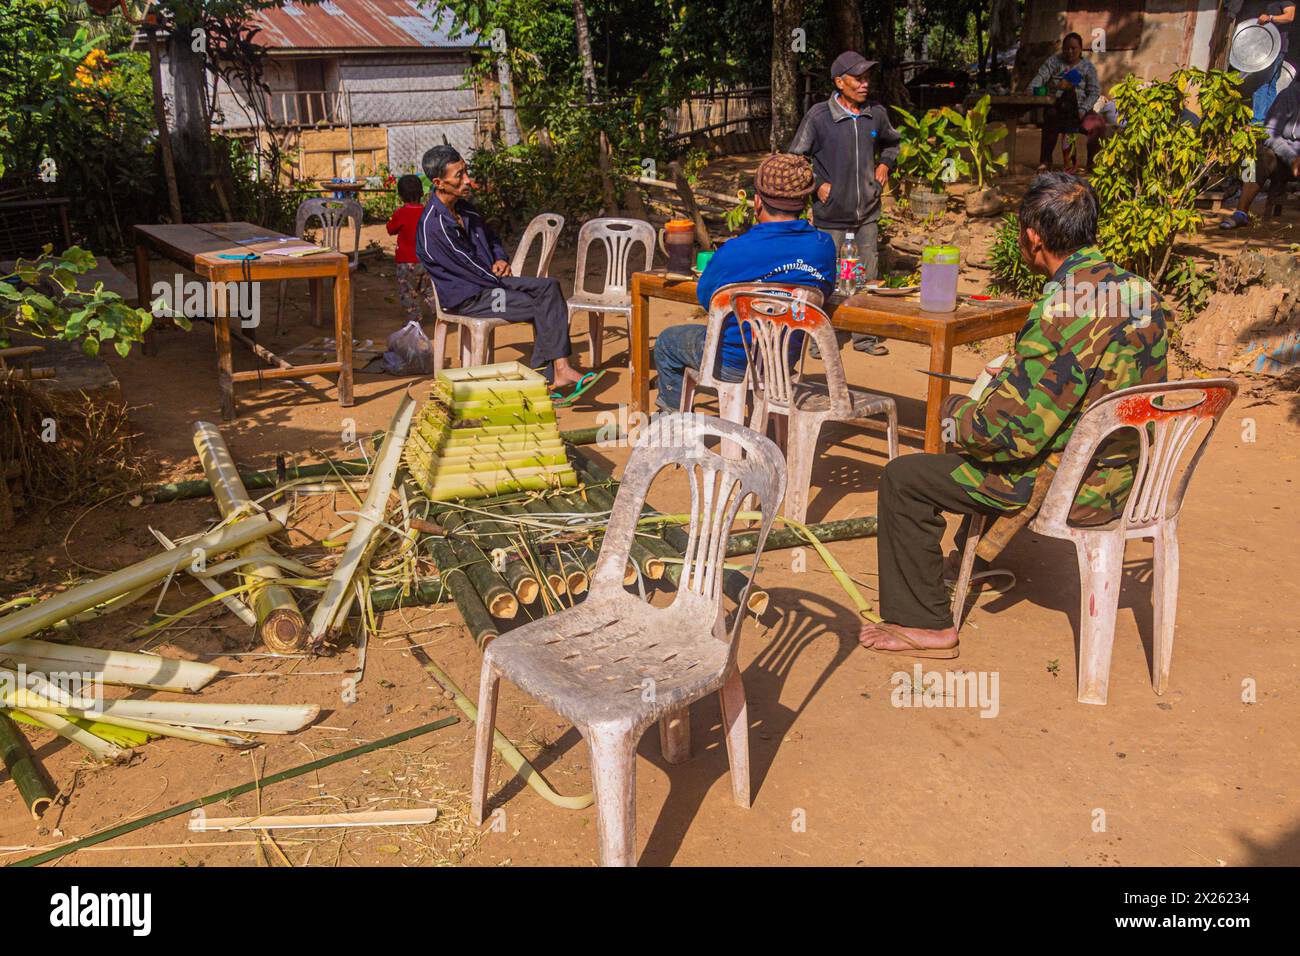 DONKHOUN, LAOS - 27 NOVEMBRE 2019: Abitanti del villaggio che preparano una nave galleggiante per placare gli spiriti nel villaggio di Donkhoun (Done Khoun) vicino a Nong Khiaw, Laos Foto Stock